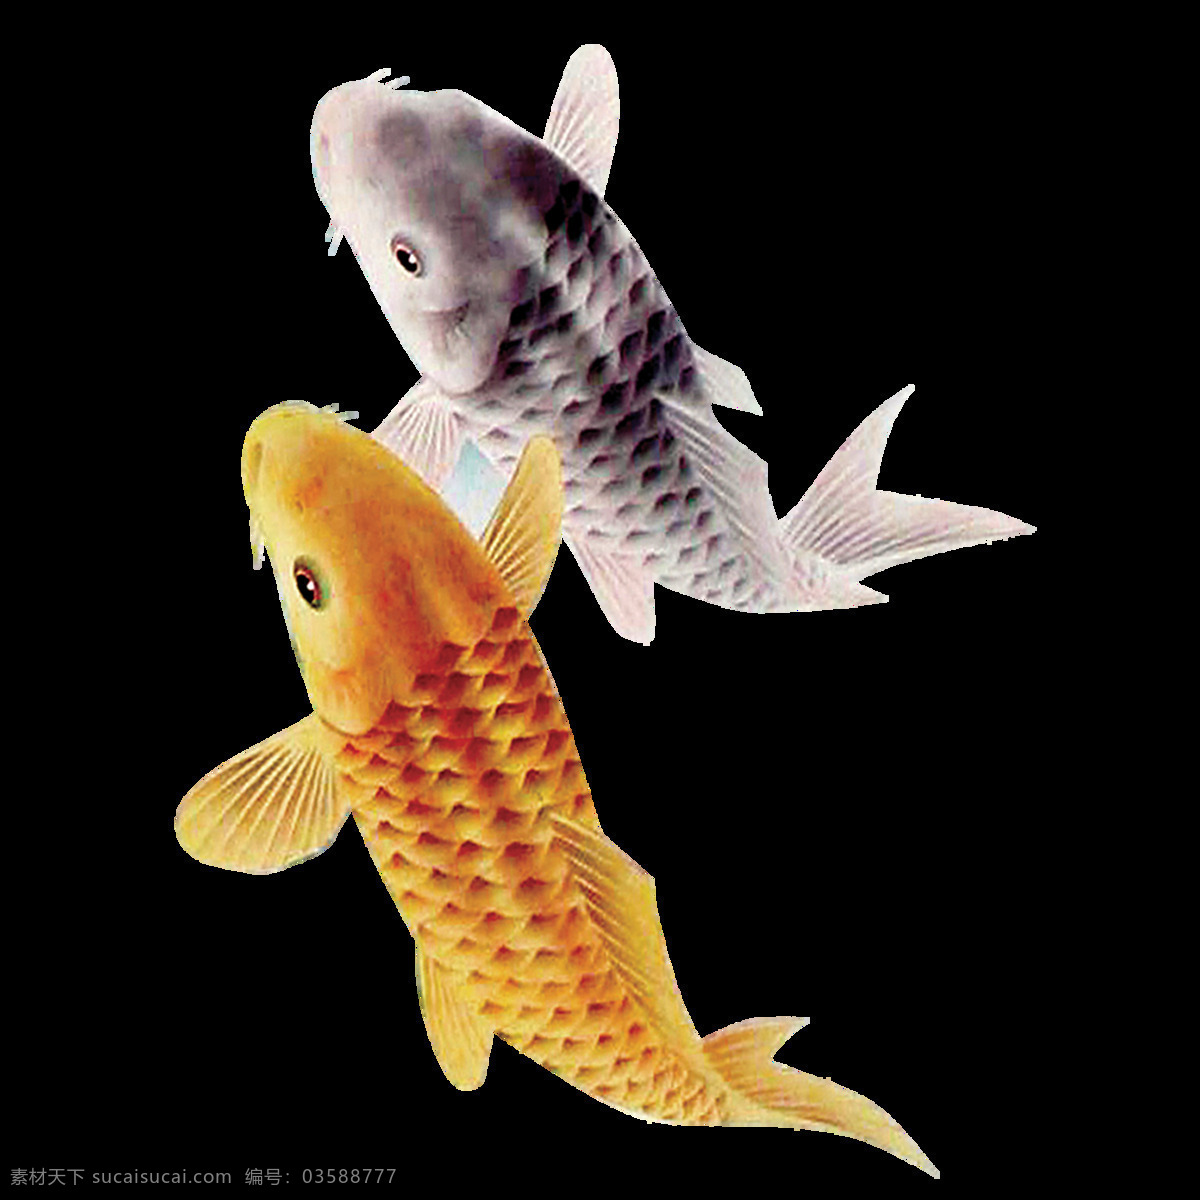 唯美 印象 鱼儿 绘画 两条鱼儿 鲜明 形象 写实 鲜活